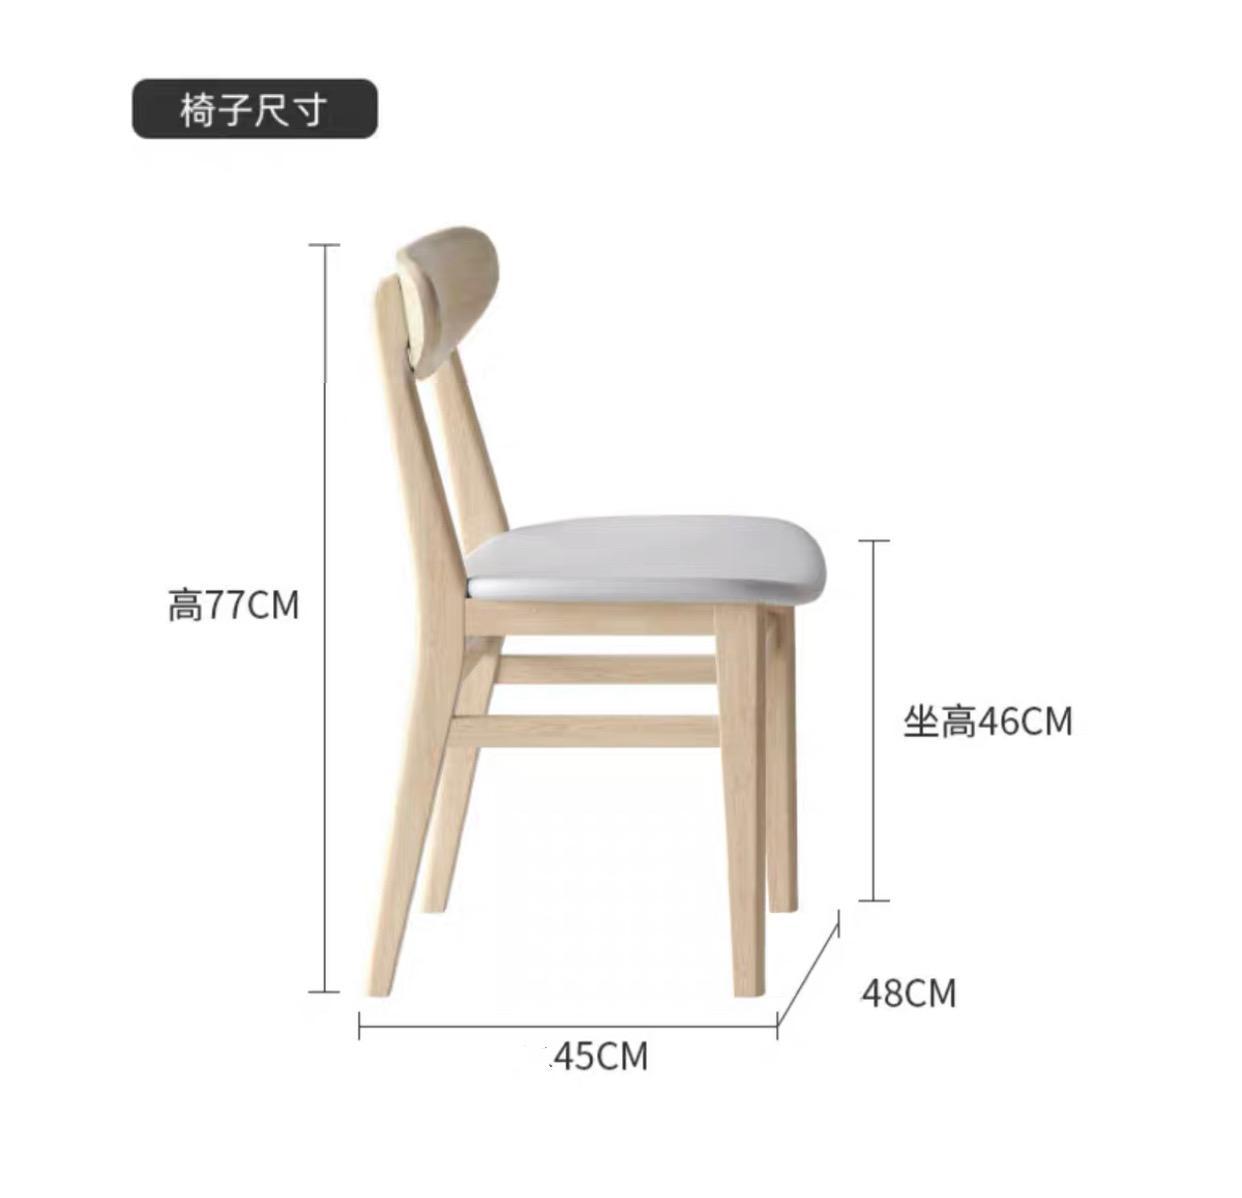 北歐實木系列 白蠟木 餐椅 (IS6974)